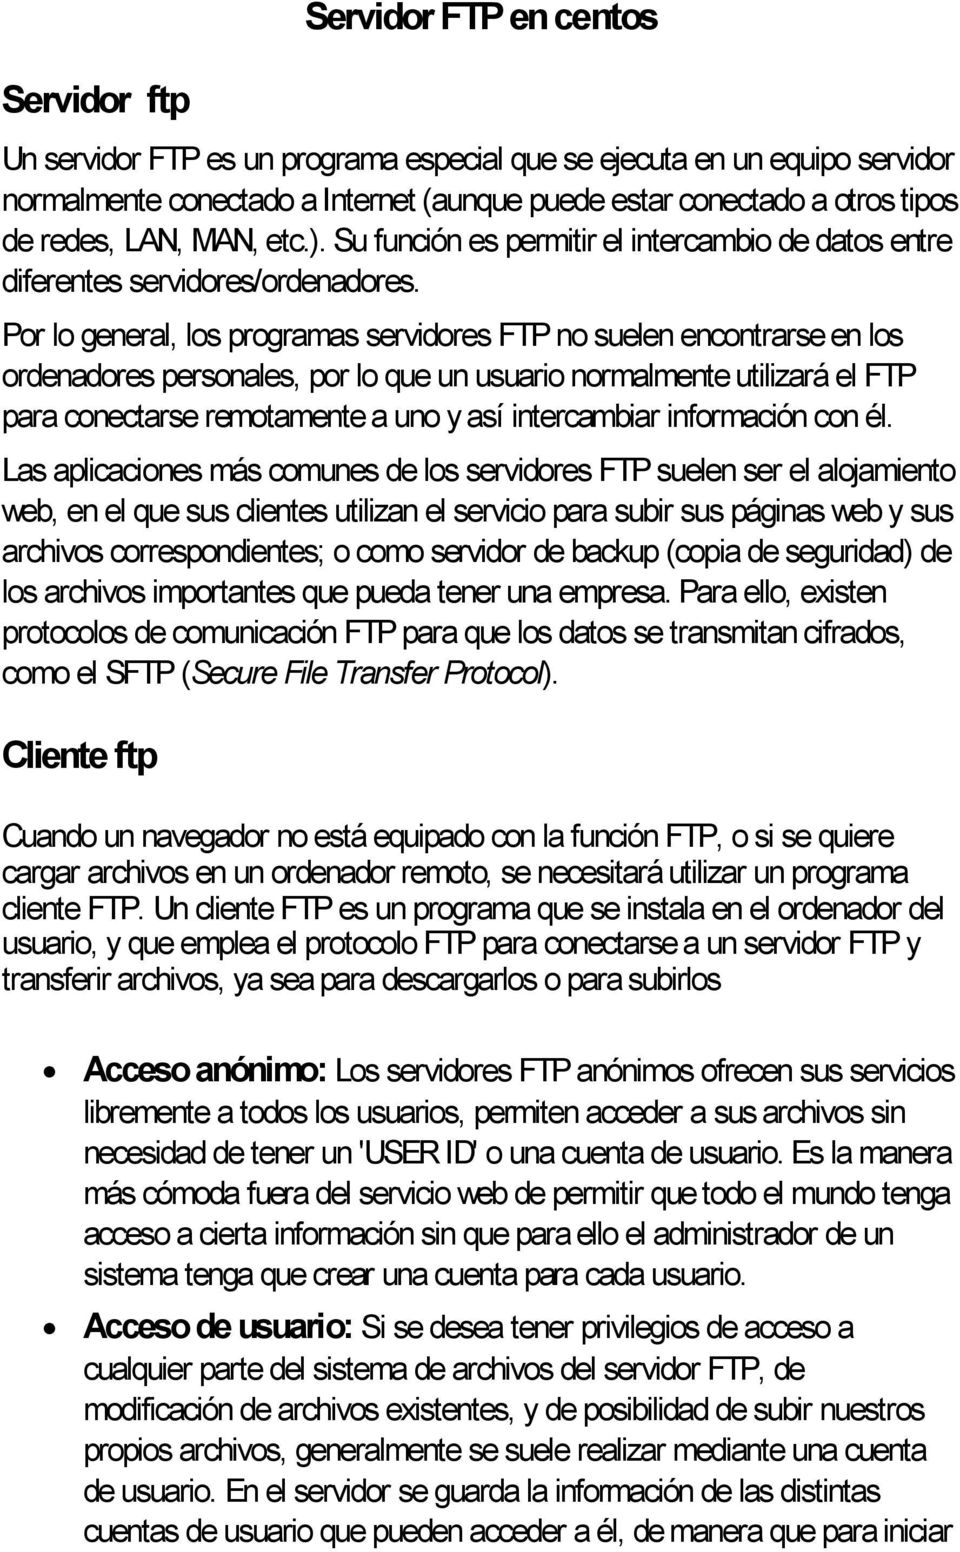 Por lo general, los programas servidores FTP no suelen encontrarse en los ordenadores personales, por lo que un usuario normalmente utilizará el FTP para conectarse remotamente a uno y así